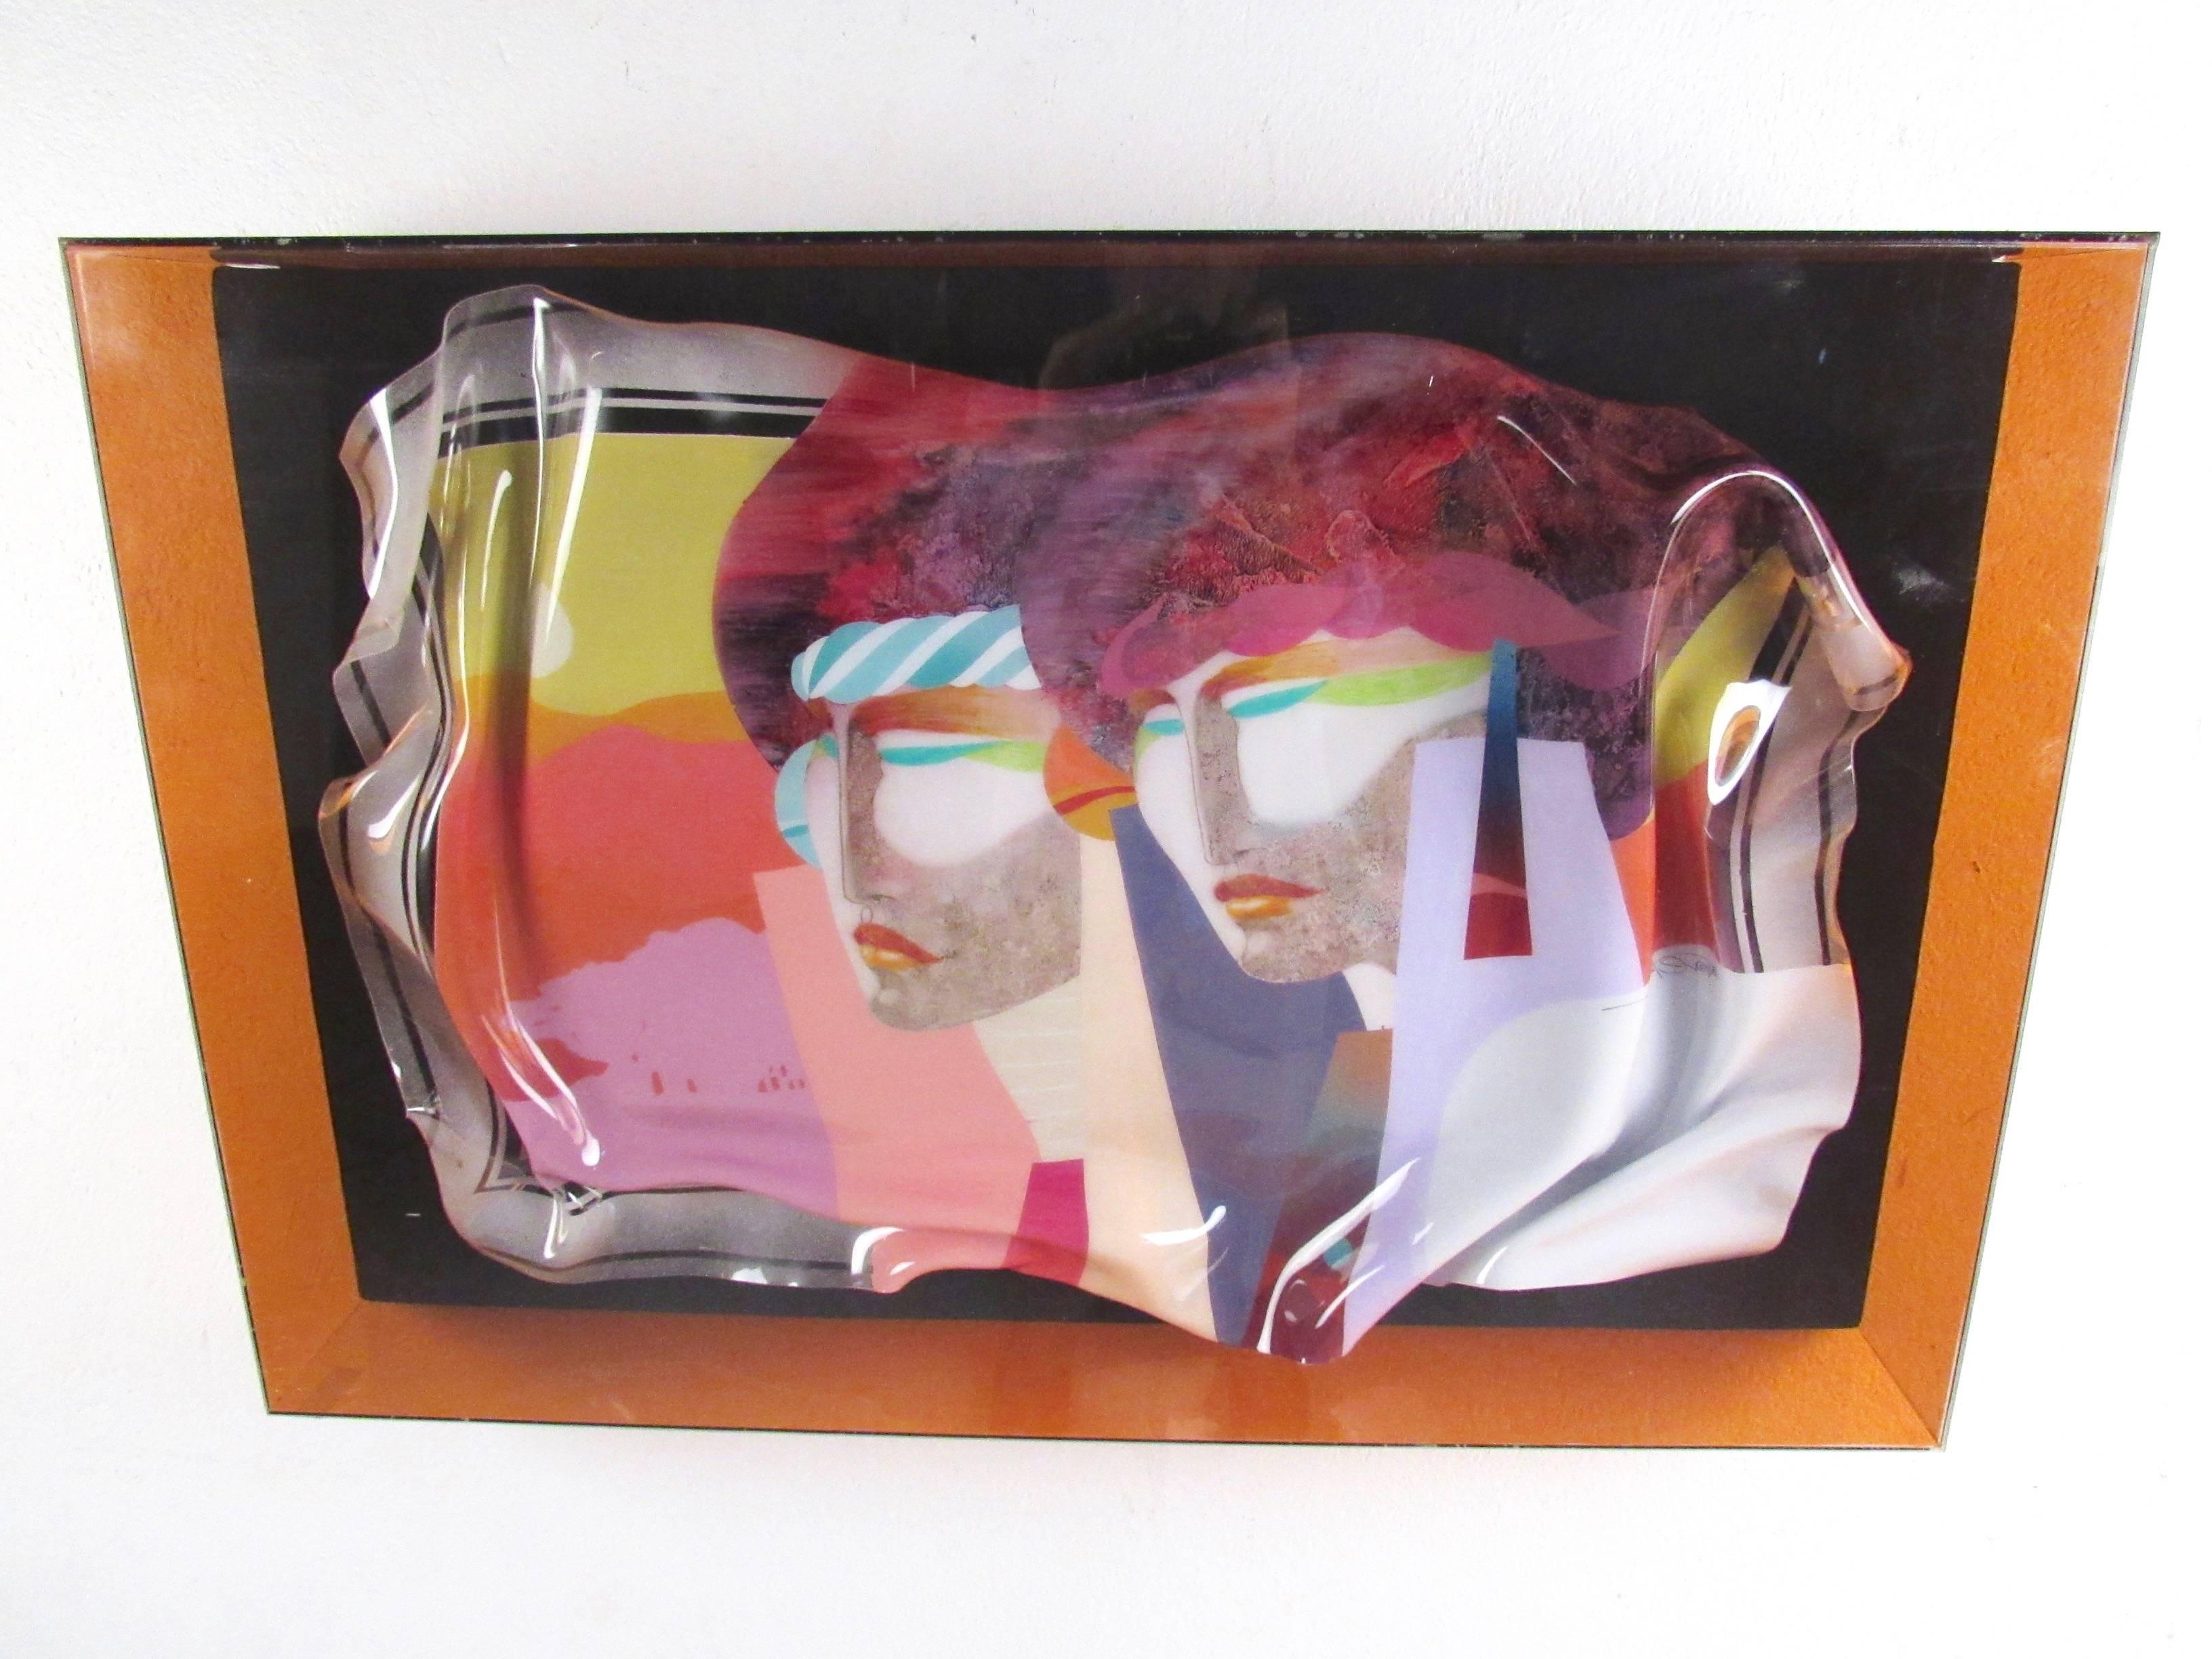 Dieses farbenfrohe, moderne Wandbild zeigt zwei Frauen und eine Reihe von durchdachten abstrakten Motiven in einer leuchtenden Farbpalette. Das verschnörkelte Glaskunstwerk verbindet Farben und Formen auf einzigartige Weise und ist sicher in einer